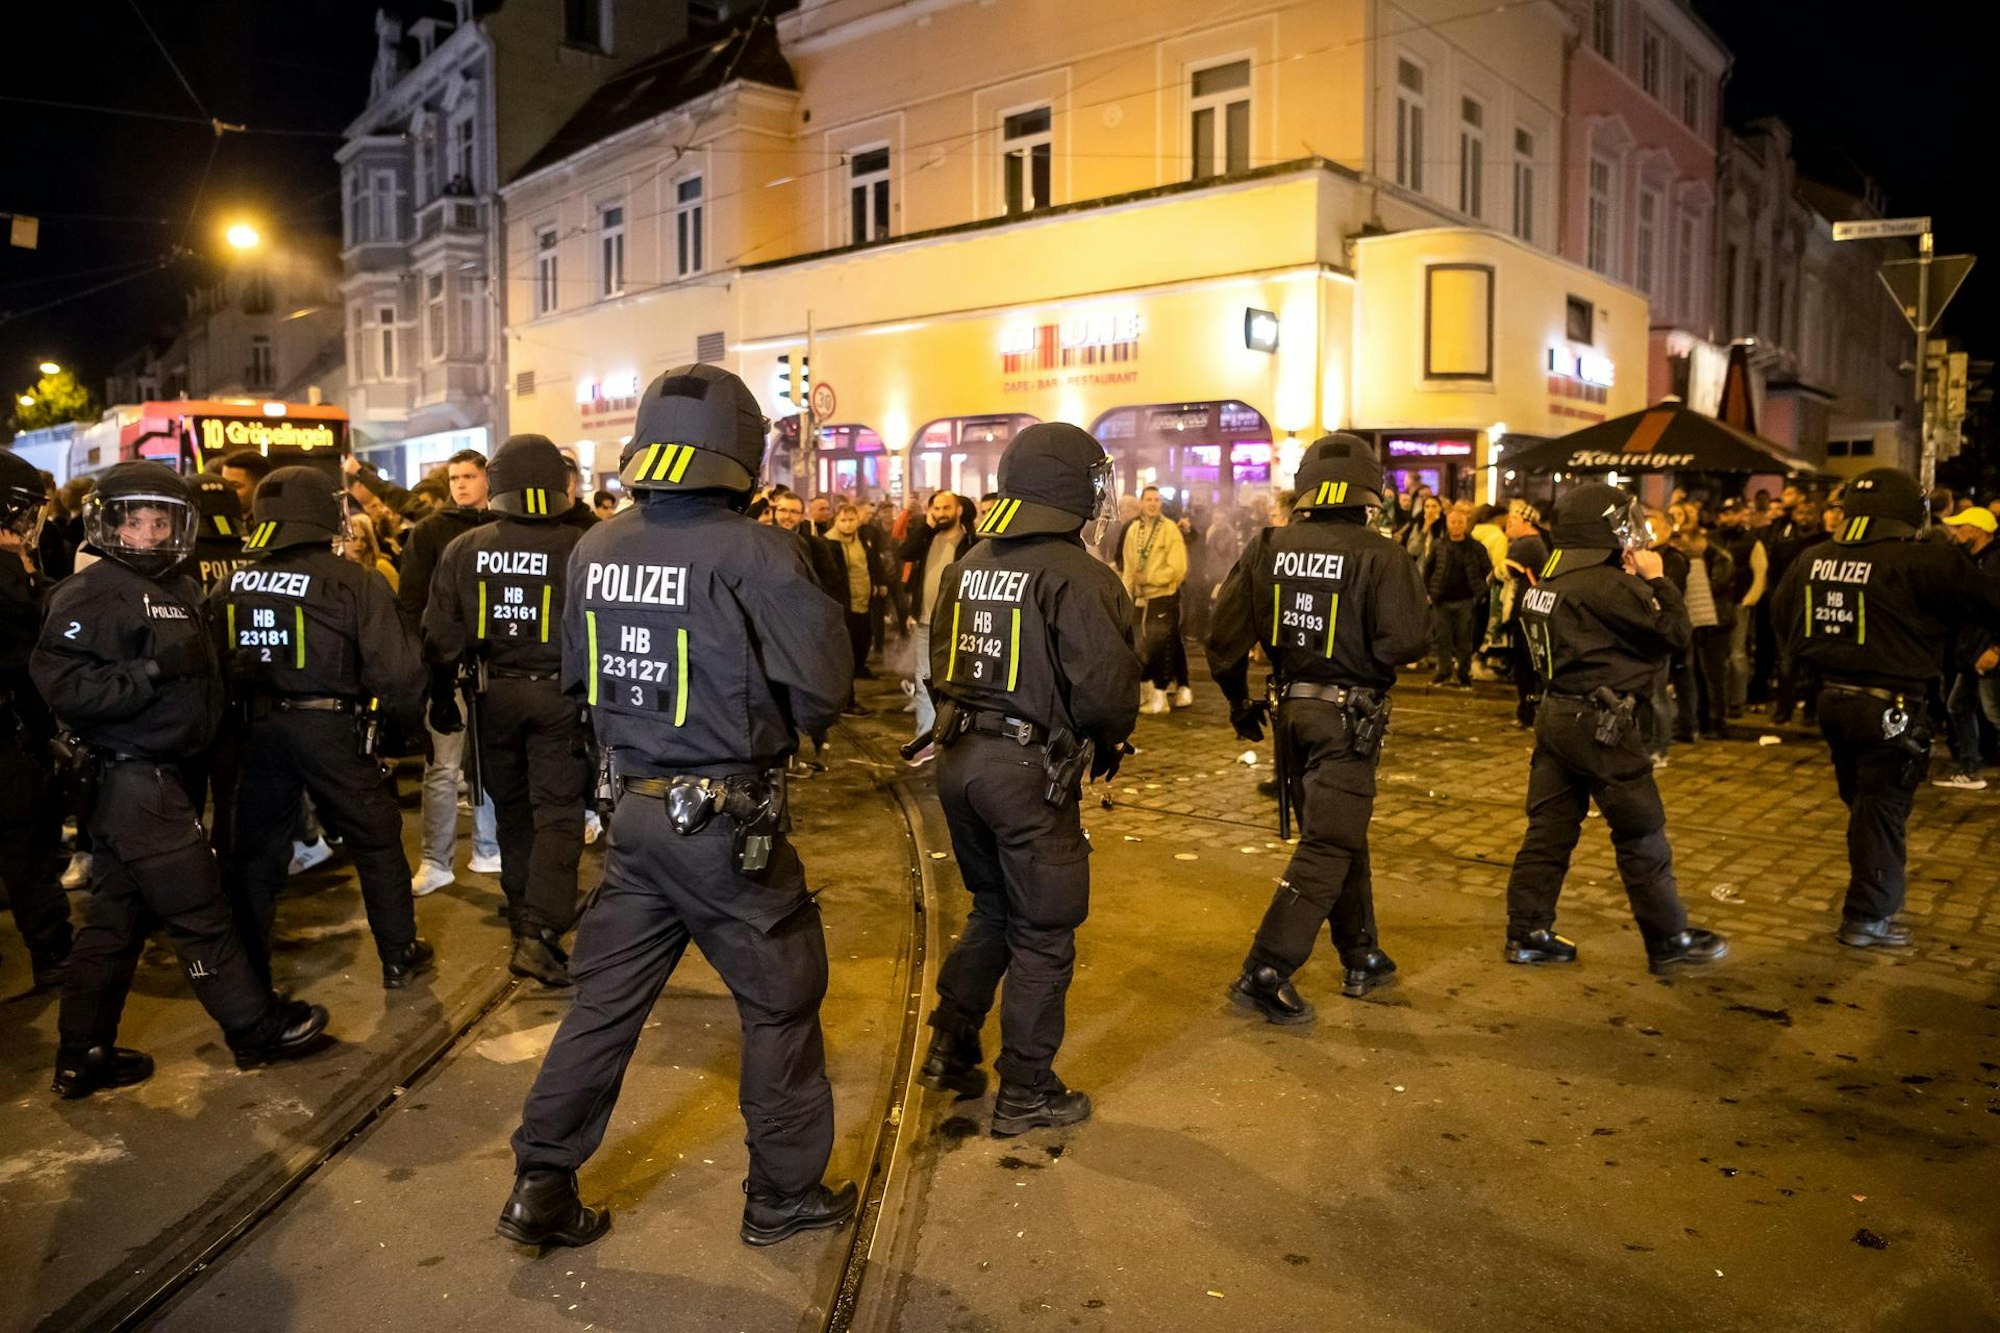 Polizei_Bremen_Relegation_Straße